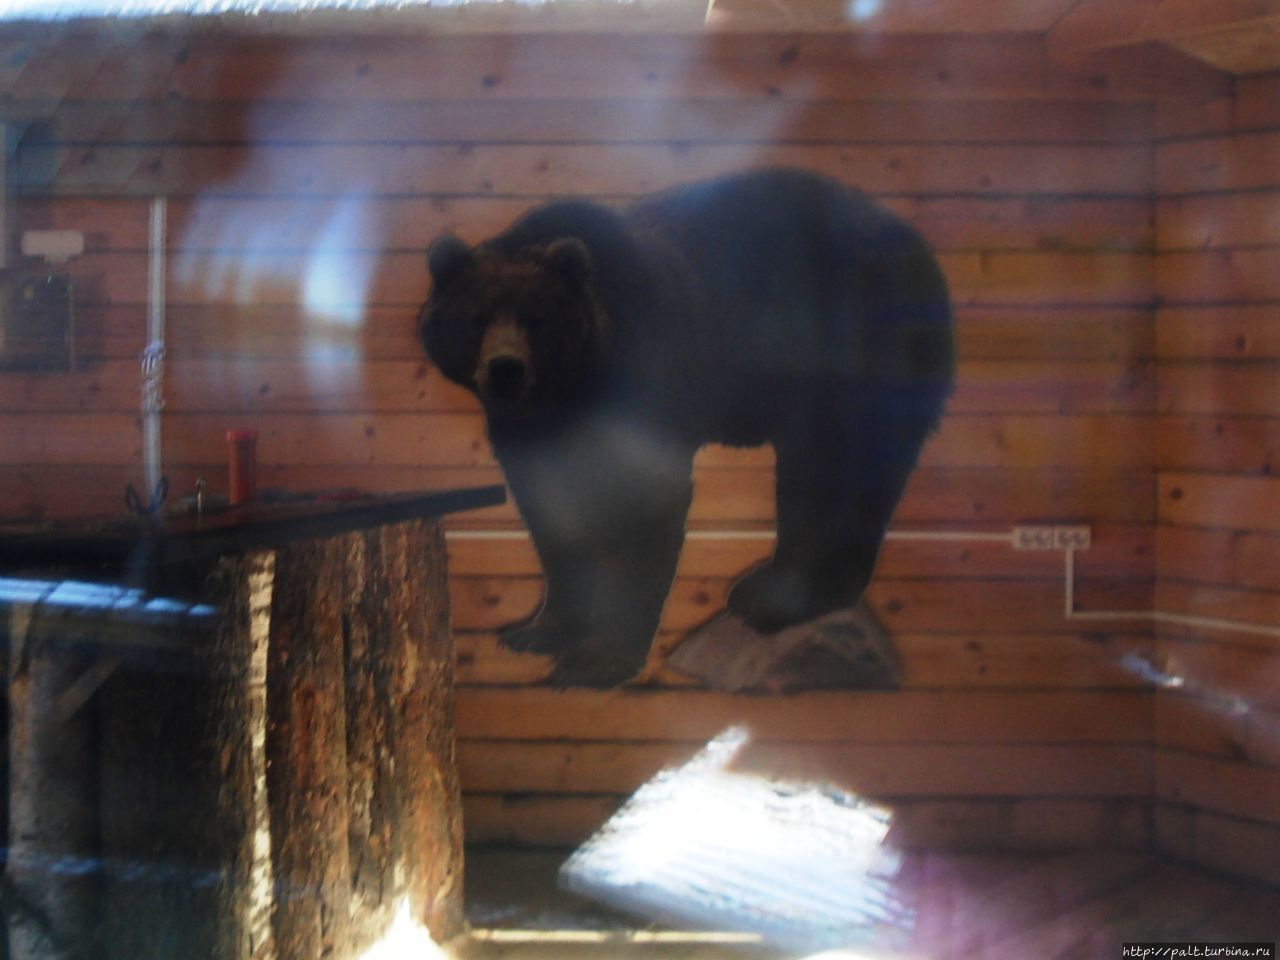 За приезжими наблюдает из закрытого на зиму летнего кафе вот такой хозяин байкальской тайги. Нарисованный Выдрино, Россия